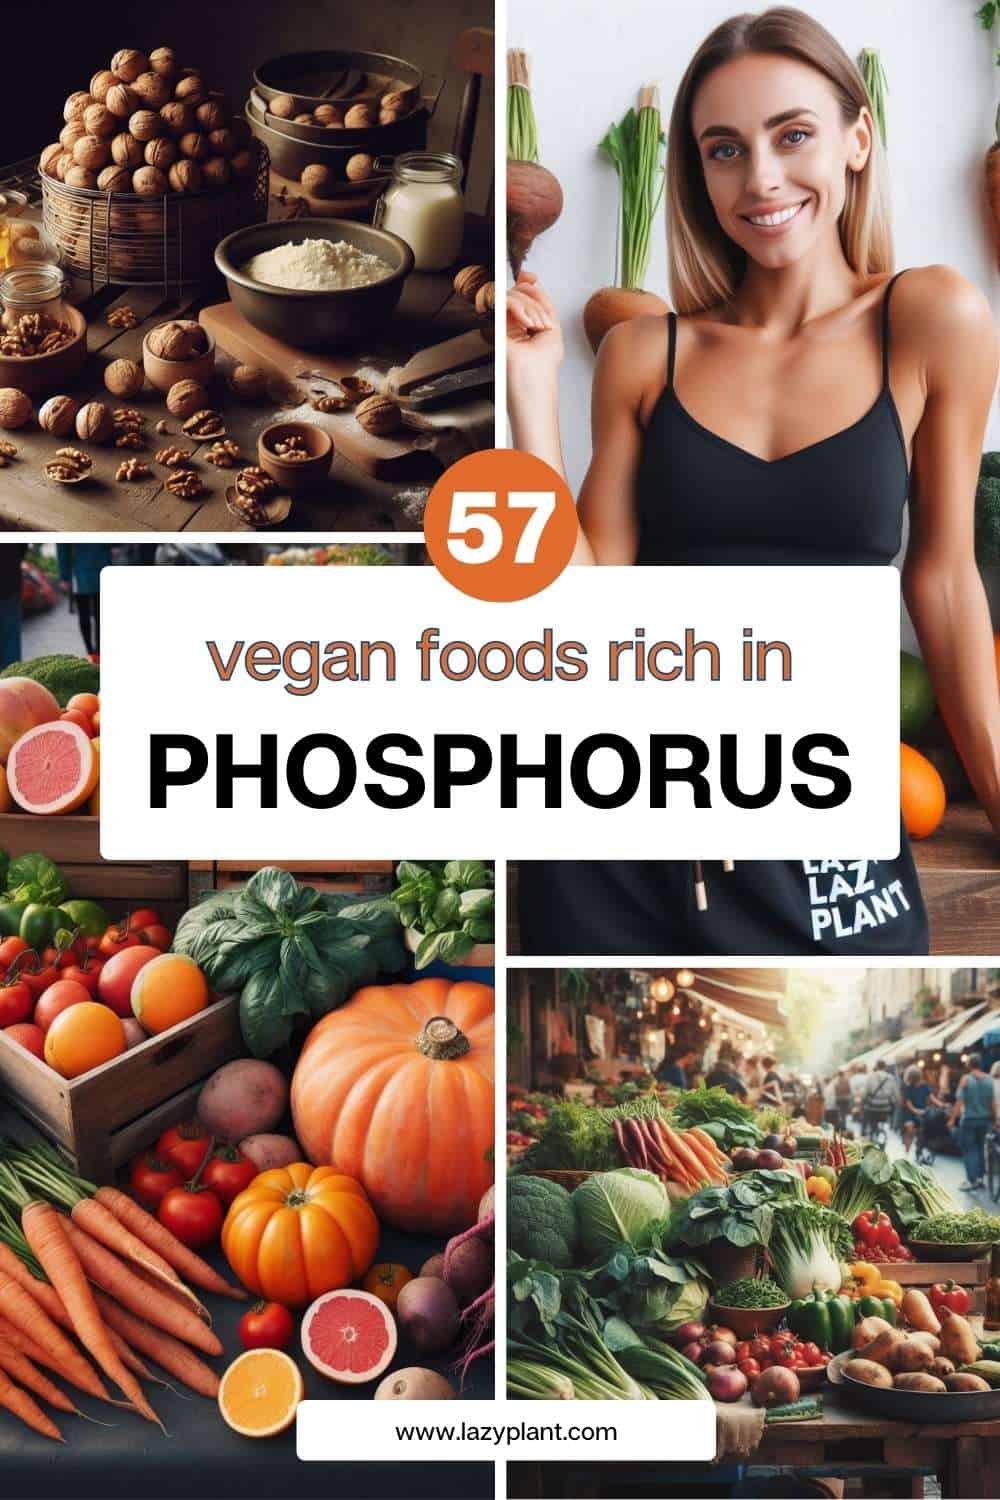 Vegan foods high in phosphorus.